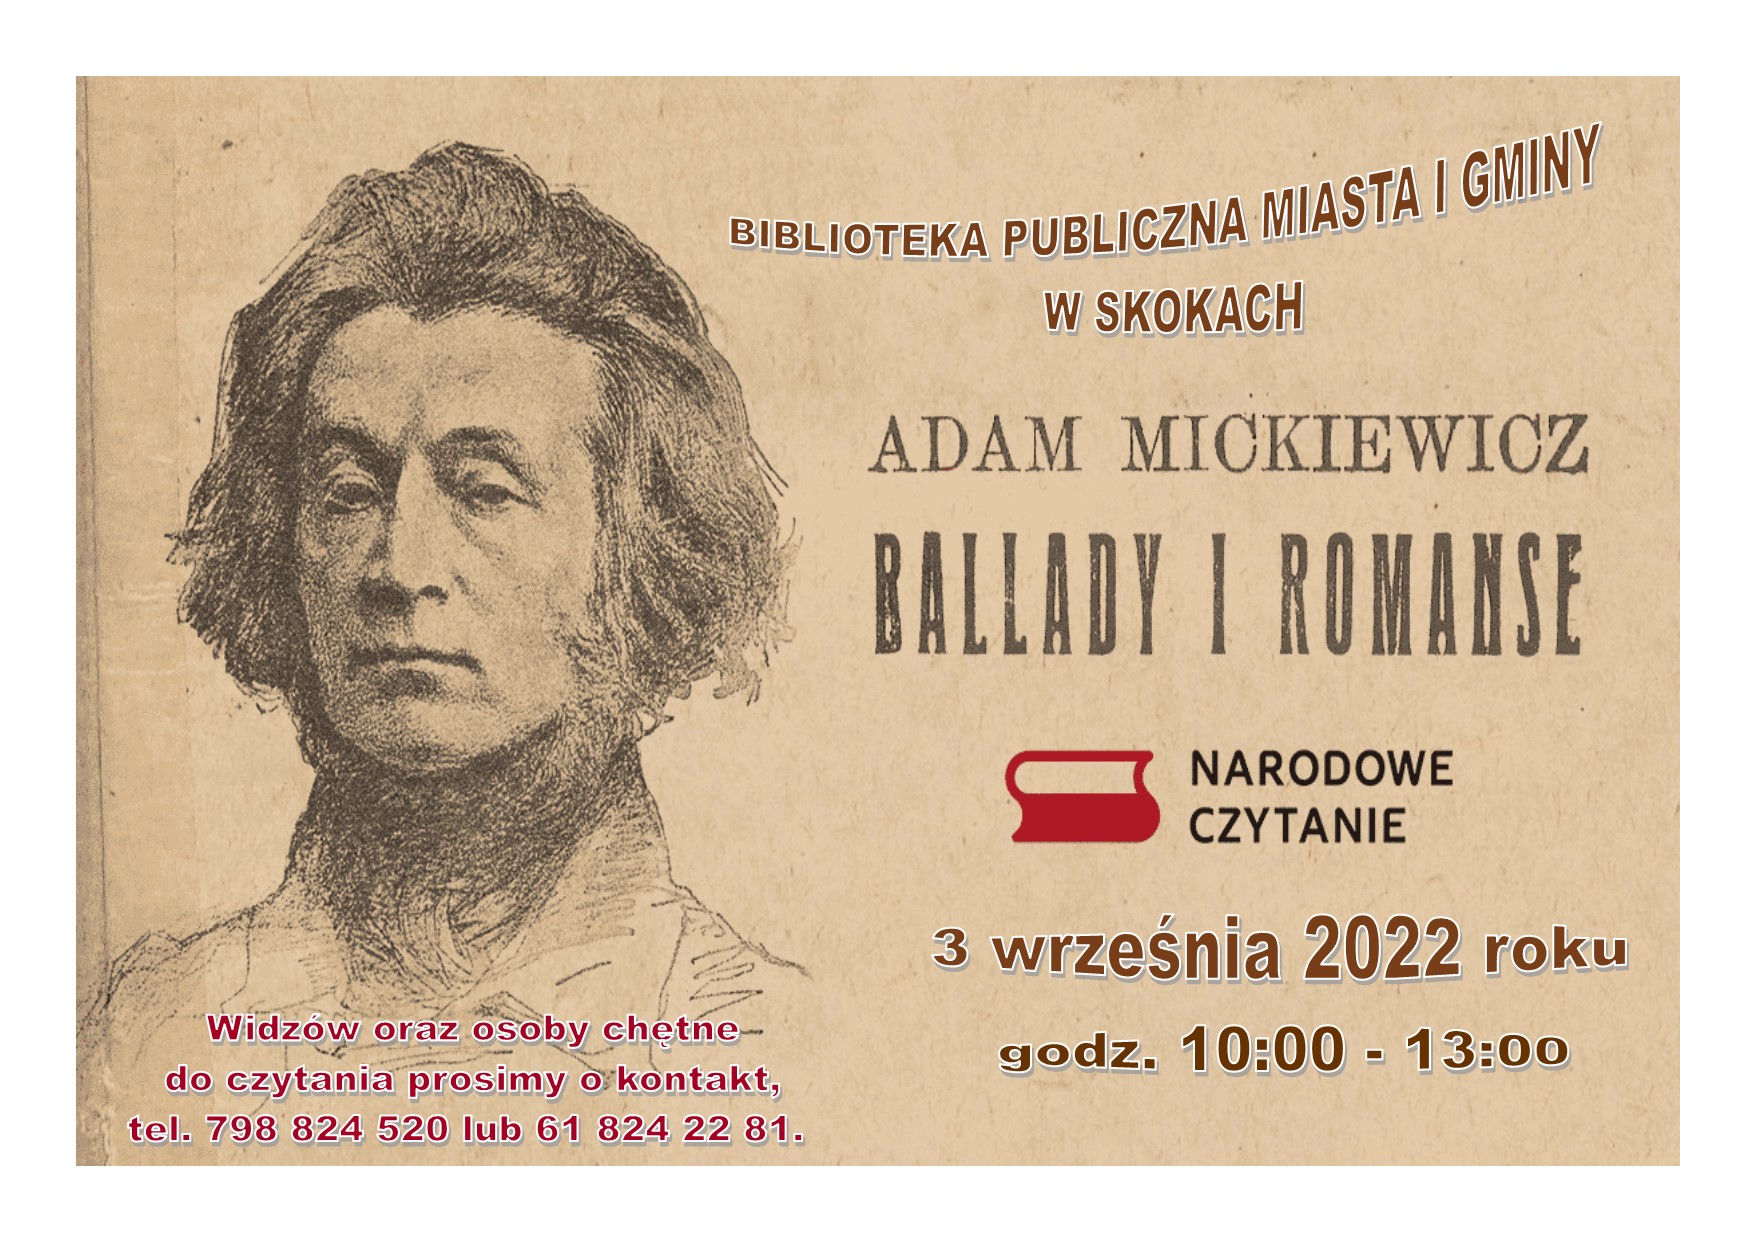 Czarno-biały portret mężczyzny. Obok napis: Adam Mickiewicz ballady i romanse.